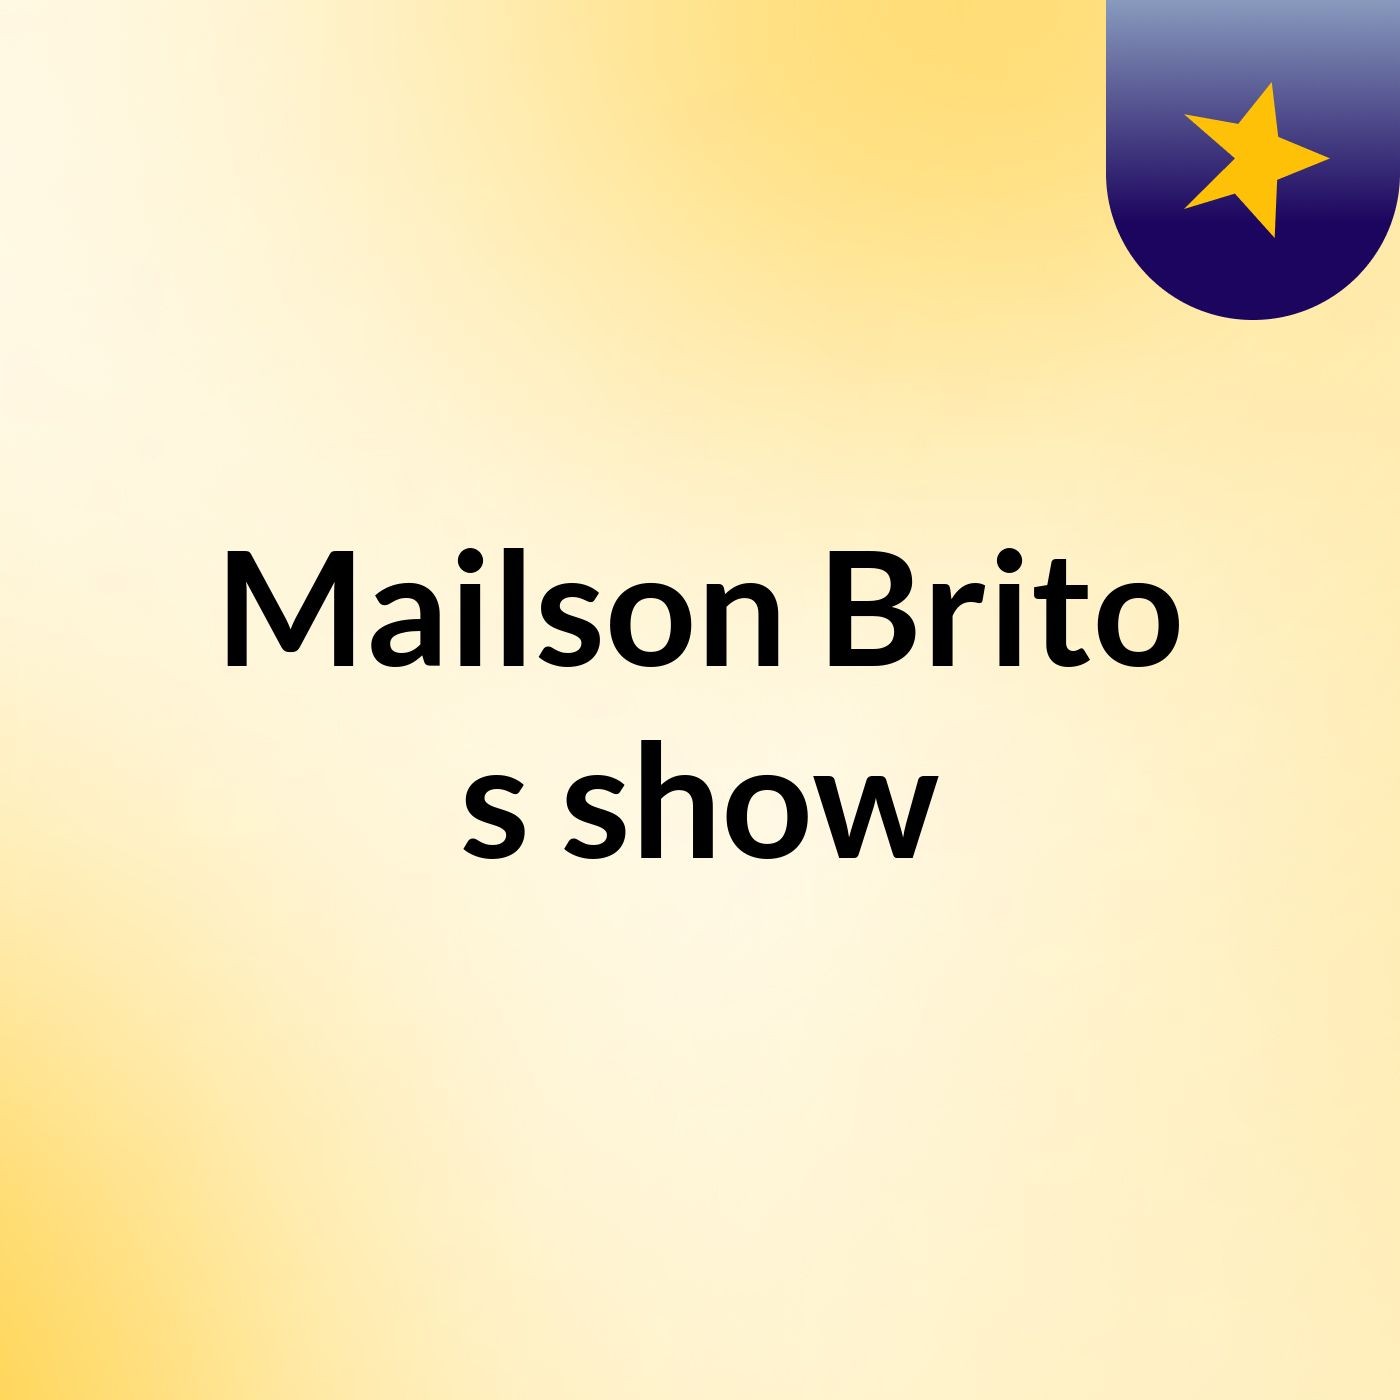 Mailson Brito's show